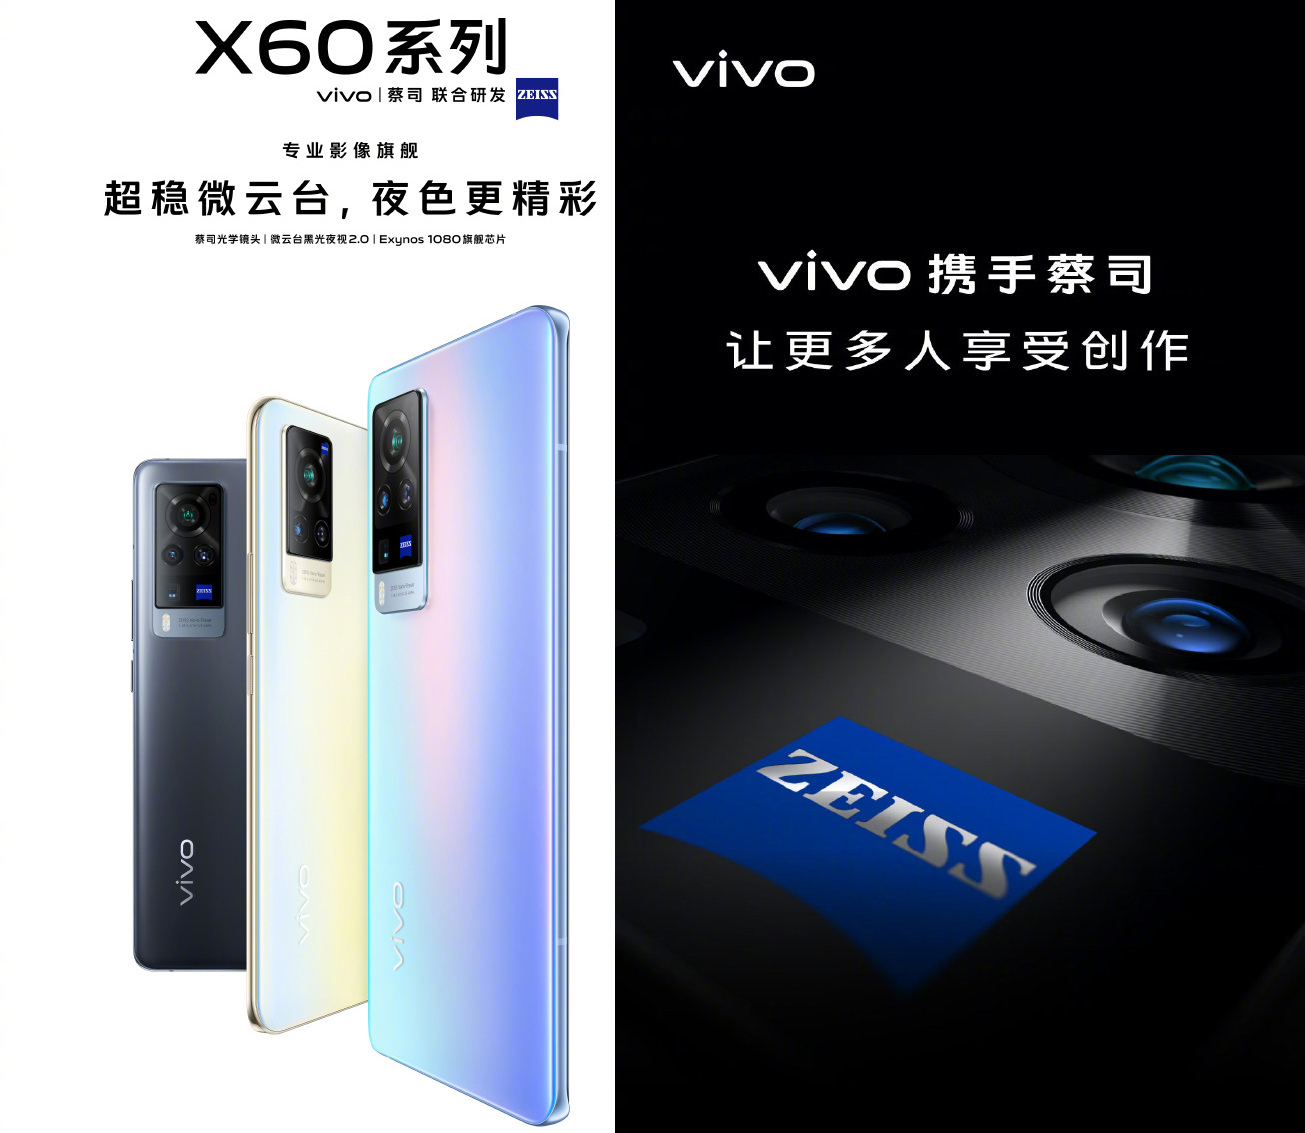 تیزر گوشی ویوو ایکس ۶۰ / Vivo X60 با لنز زایس / Zeiss